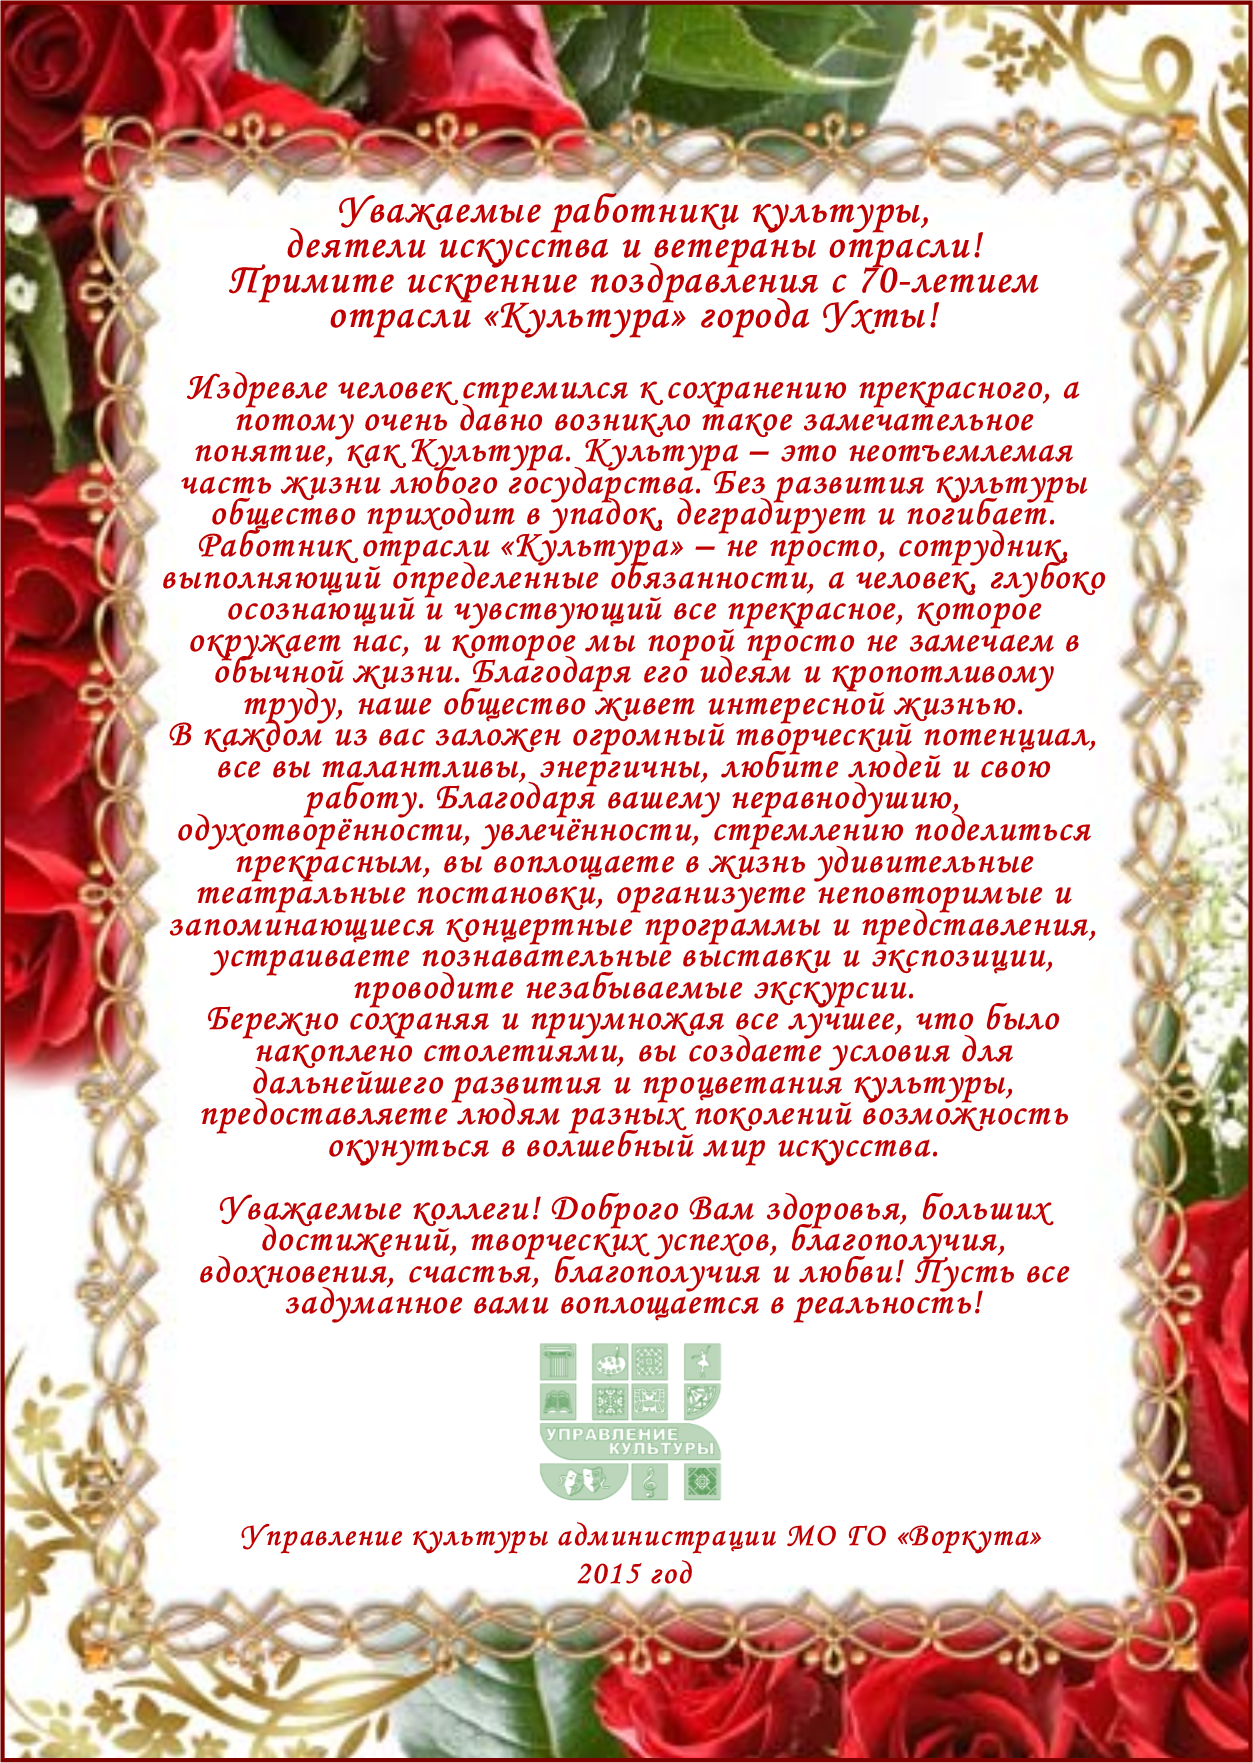 Управление культуры администрации МО ГО "Воркута" поздравляет ухтинских коллег с 70-летием образования отрасли.